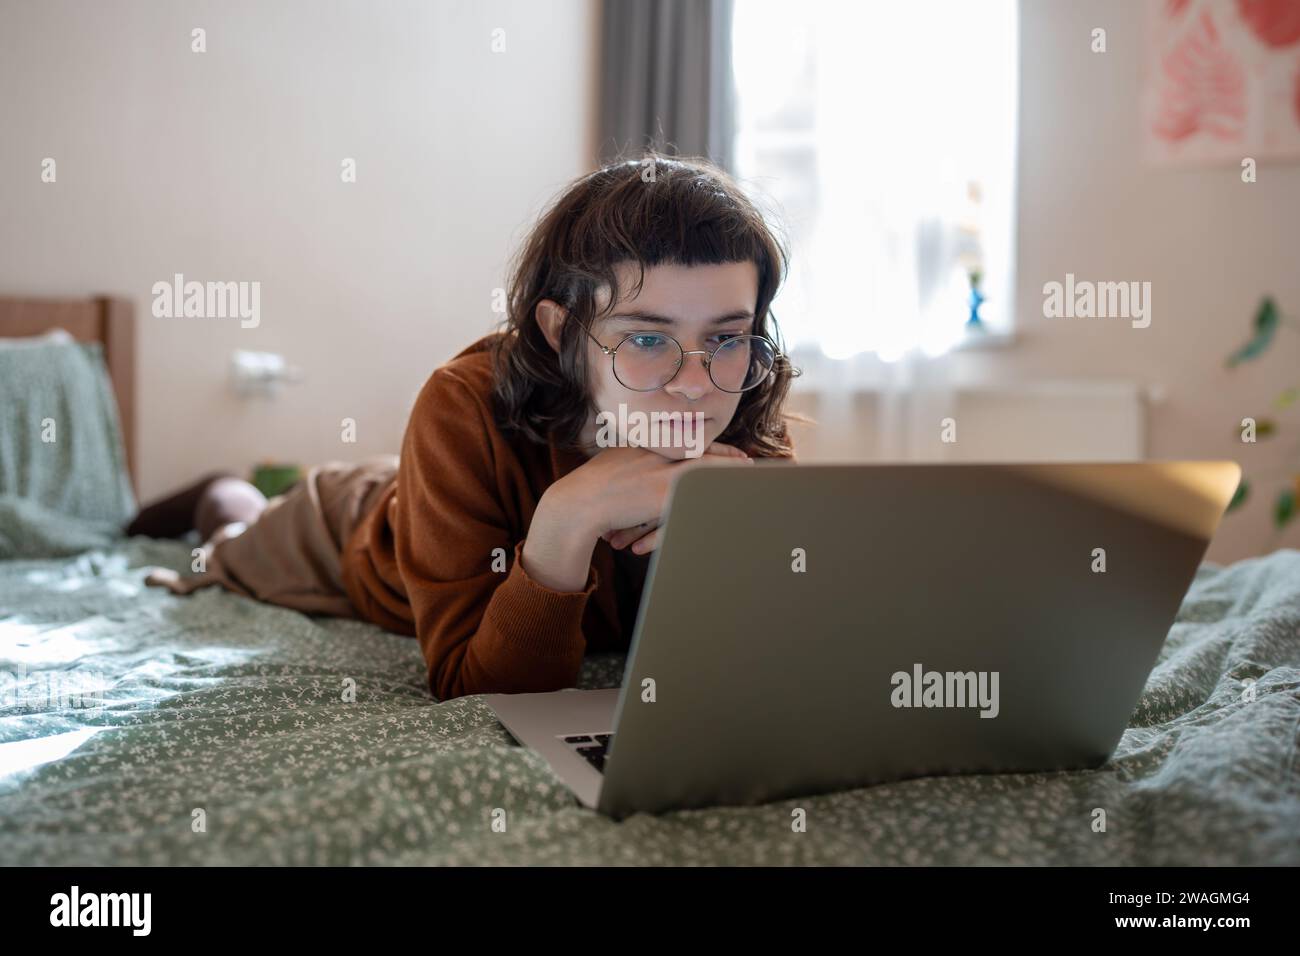 Ragazza adolescente interessata che passa il fine settimana, passeggia a casa, guarda video, filma su un computer portatile Foto Stock